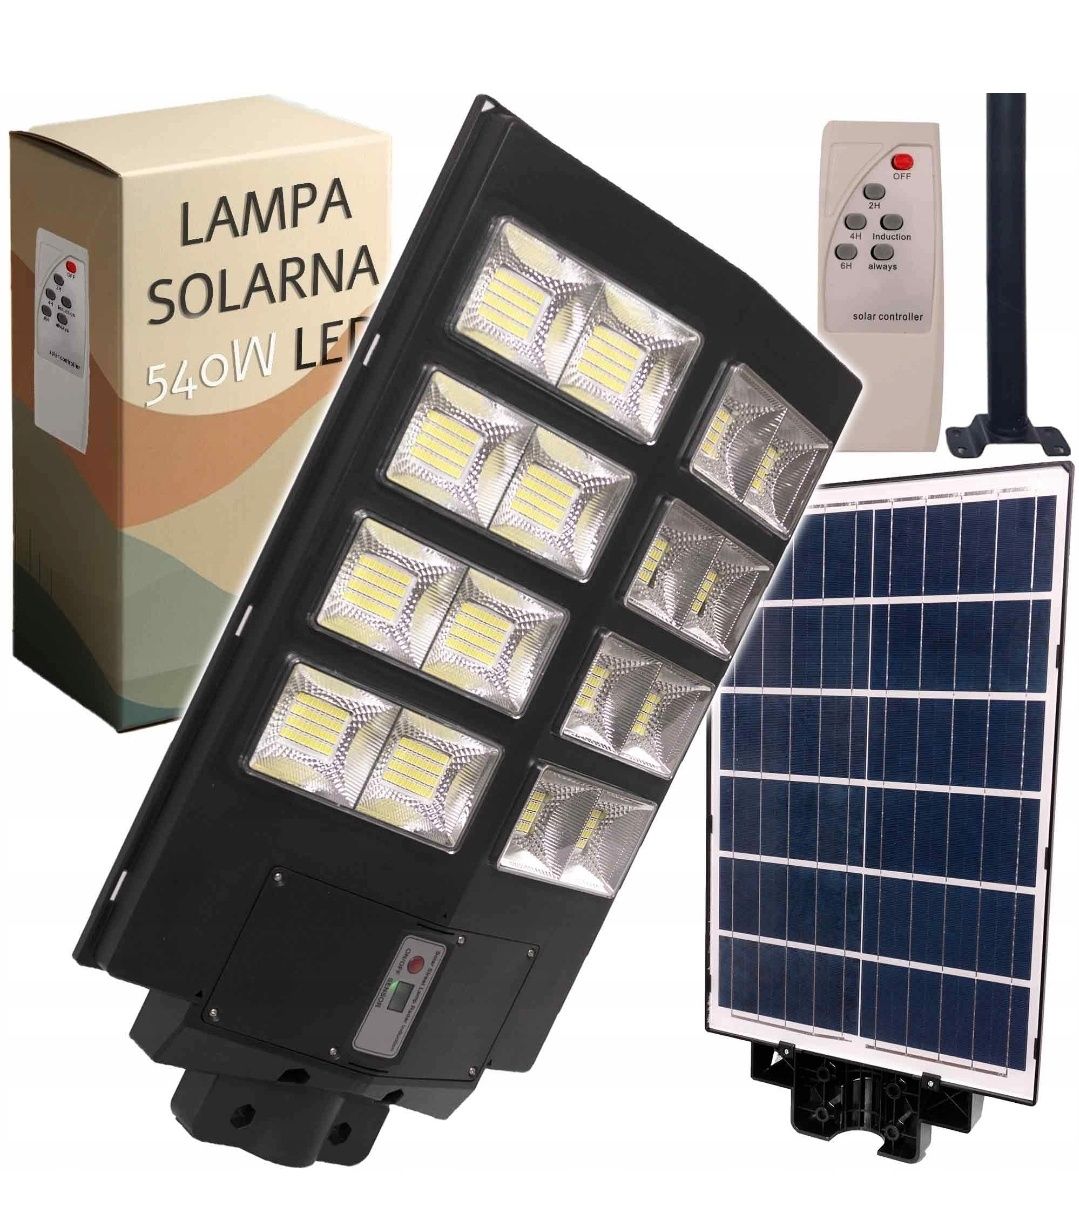 Lampy solarne uliczne przemyslowe